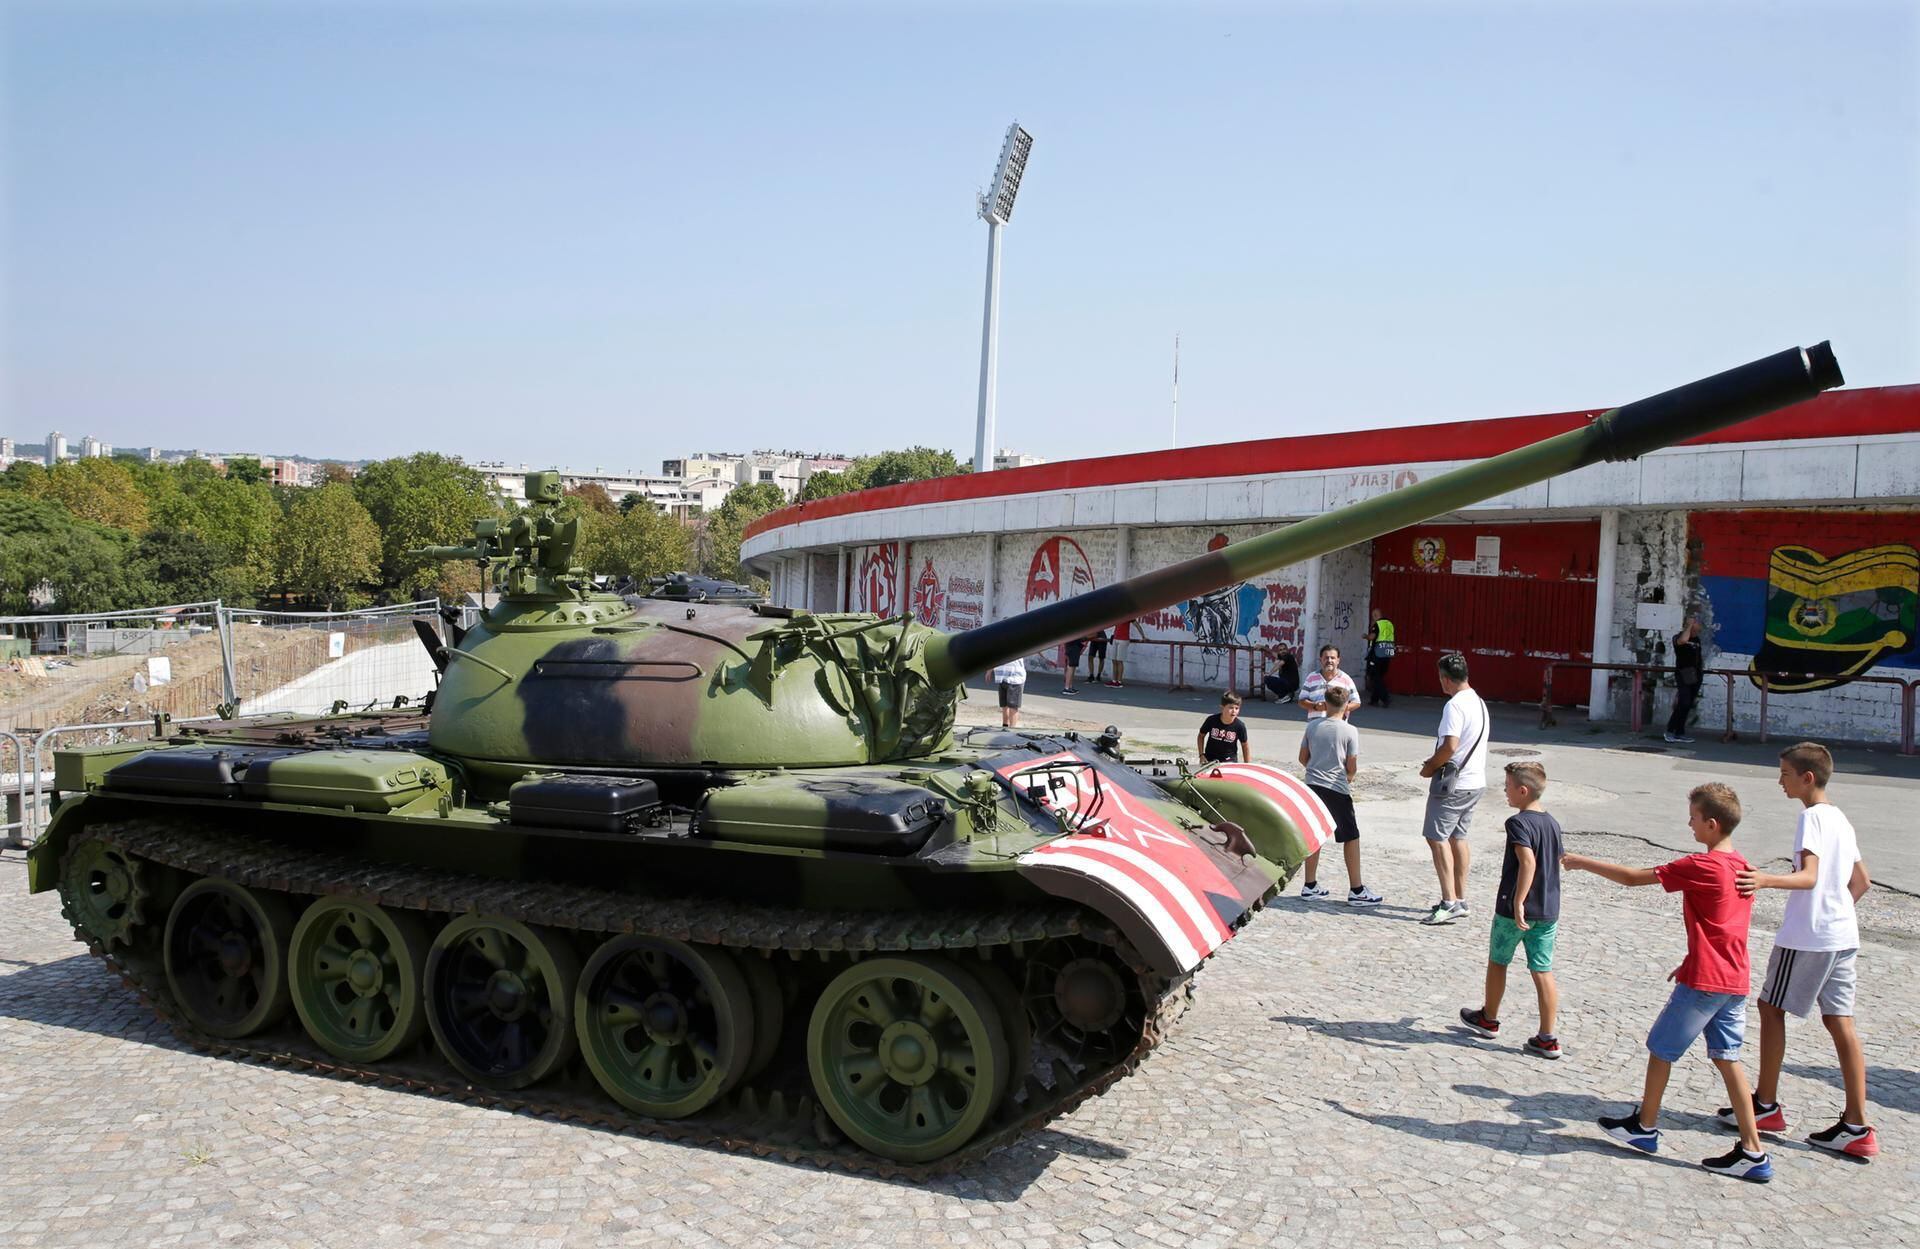 Red Star Belgrade fans park tank at soccer stadium - Sports Illustrated